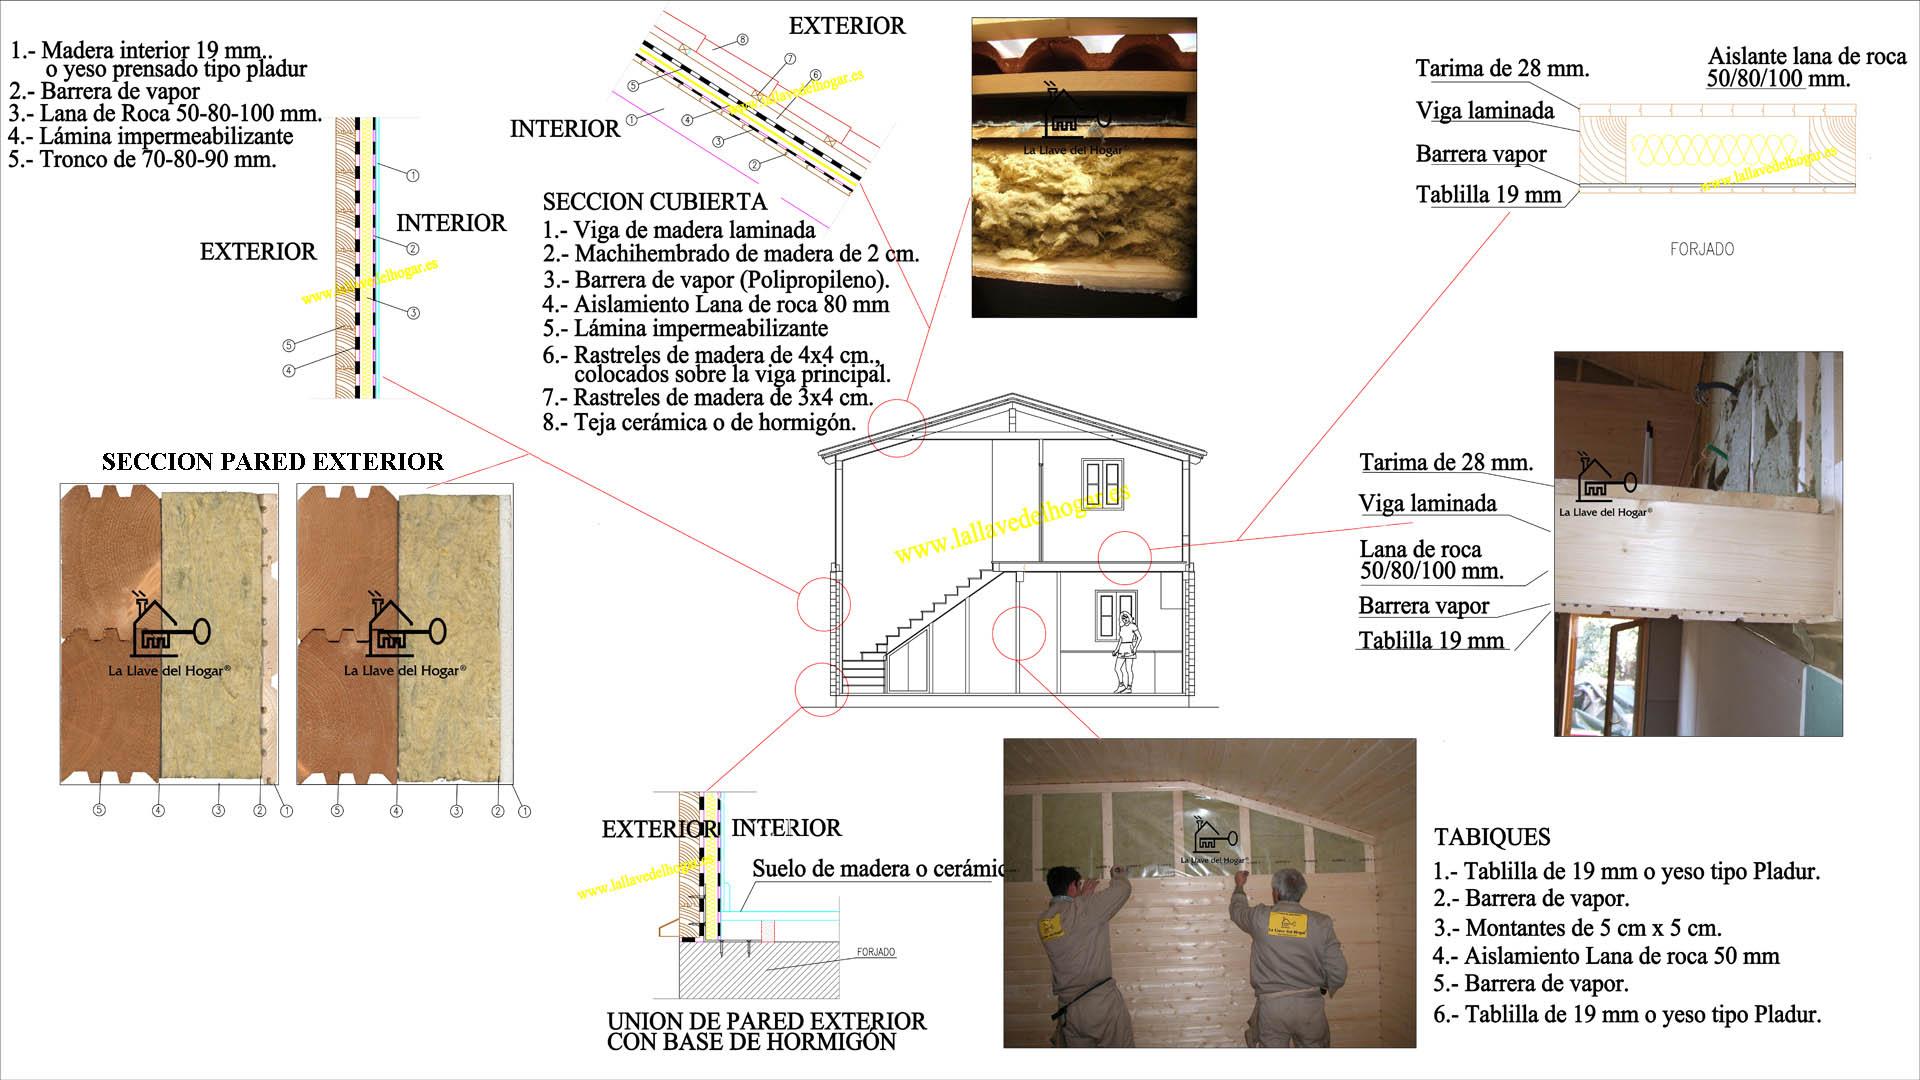 Detalle de secciones de una vivienda o casa de madera de La Llave del Hogar